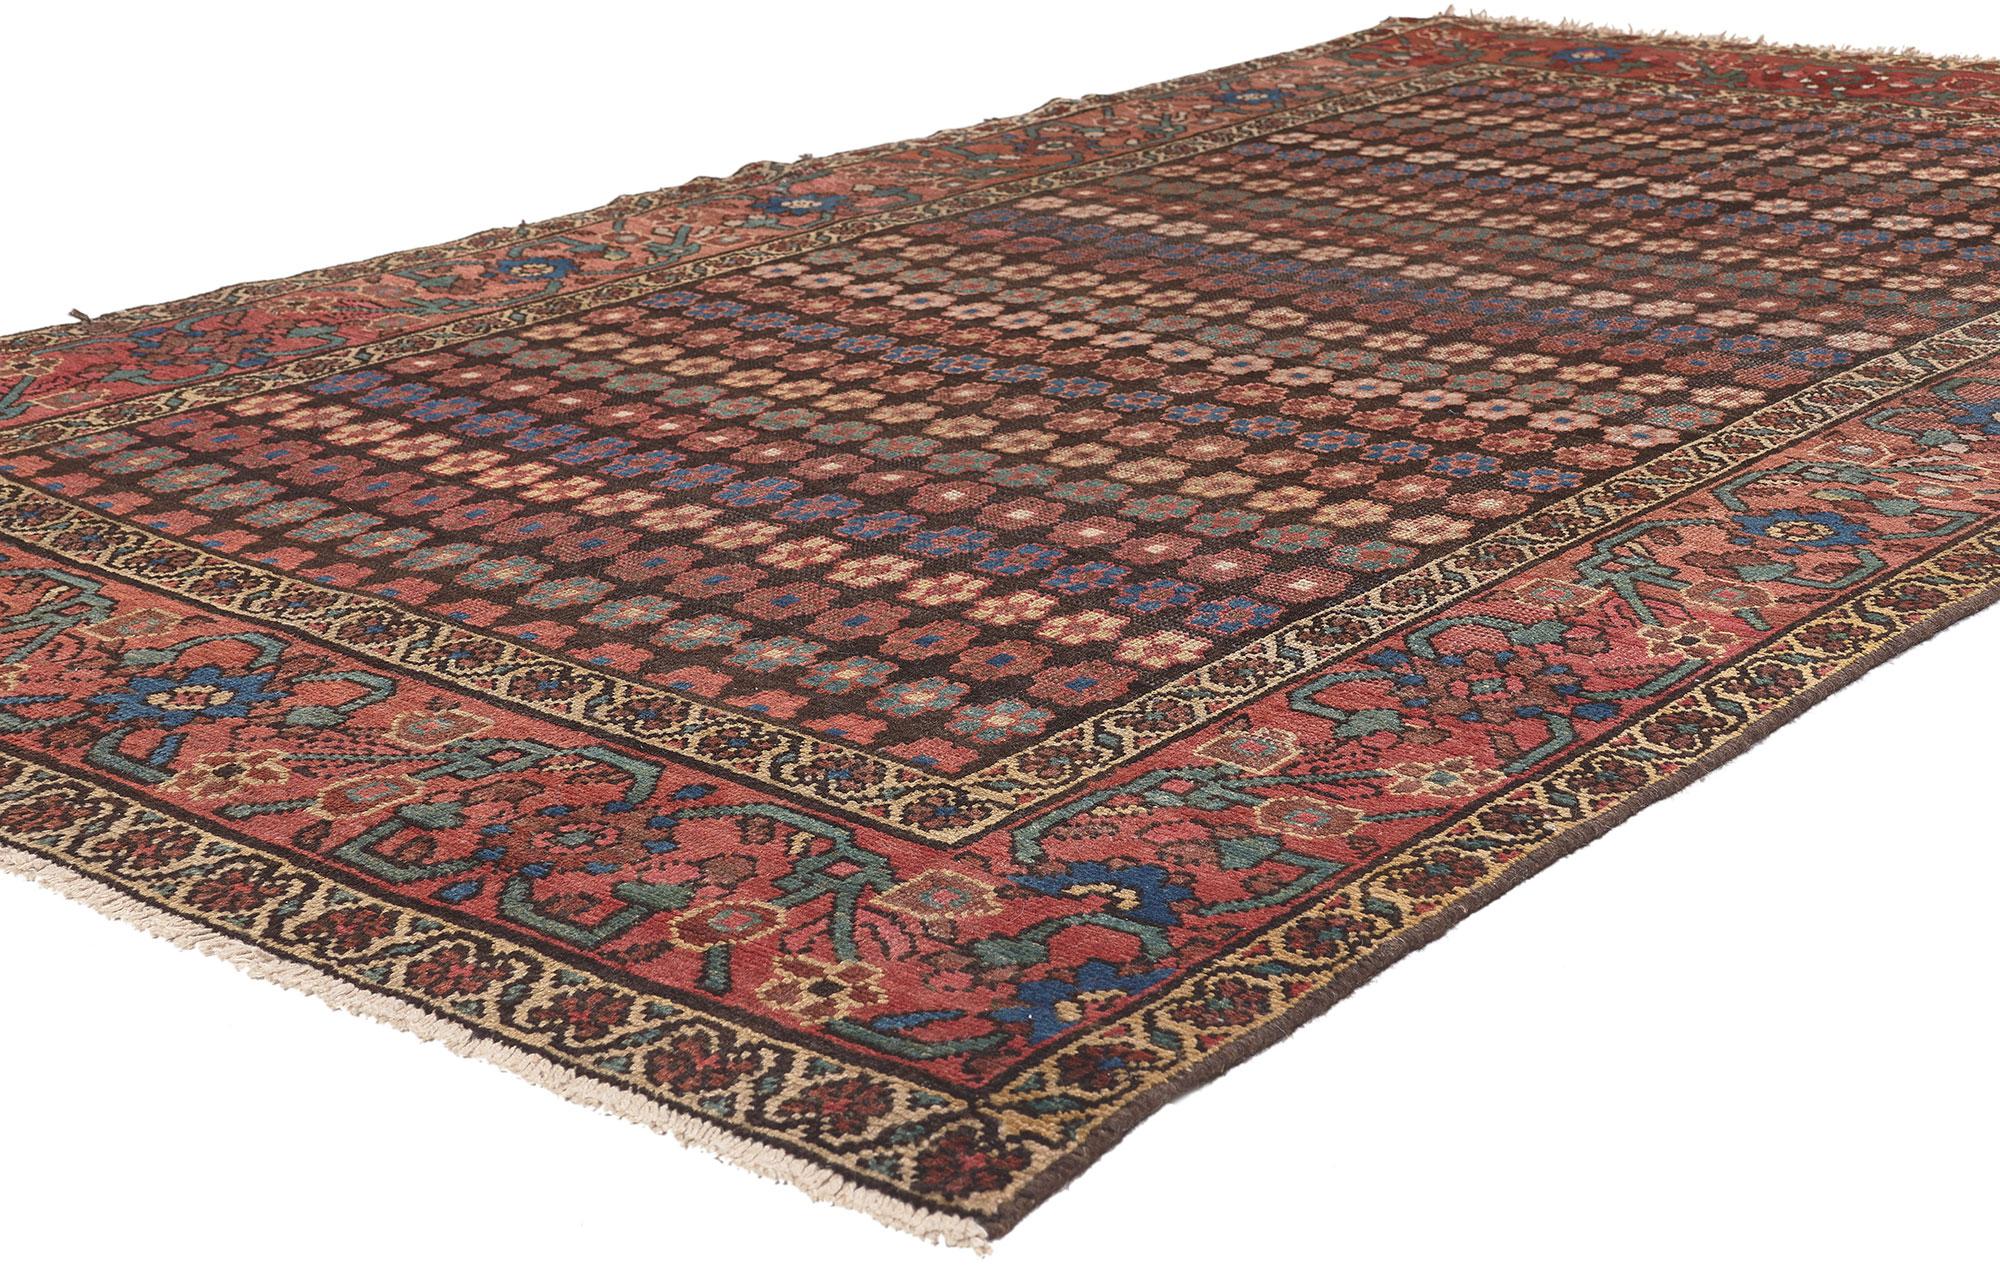 75253 Tapis antique persan Hamadan de style Arts and Crafts. Ce magnifique tapis persan Hamadan est orné de rangées répétées de fleurs stylisées de couleur azur, bisque et bordeaux sur un champ d'obsidienne, bordé d'une triple bordure de fleurs et